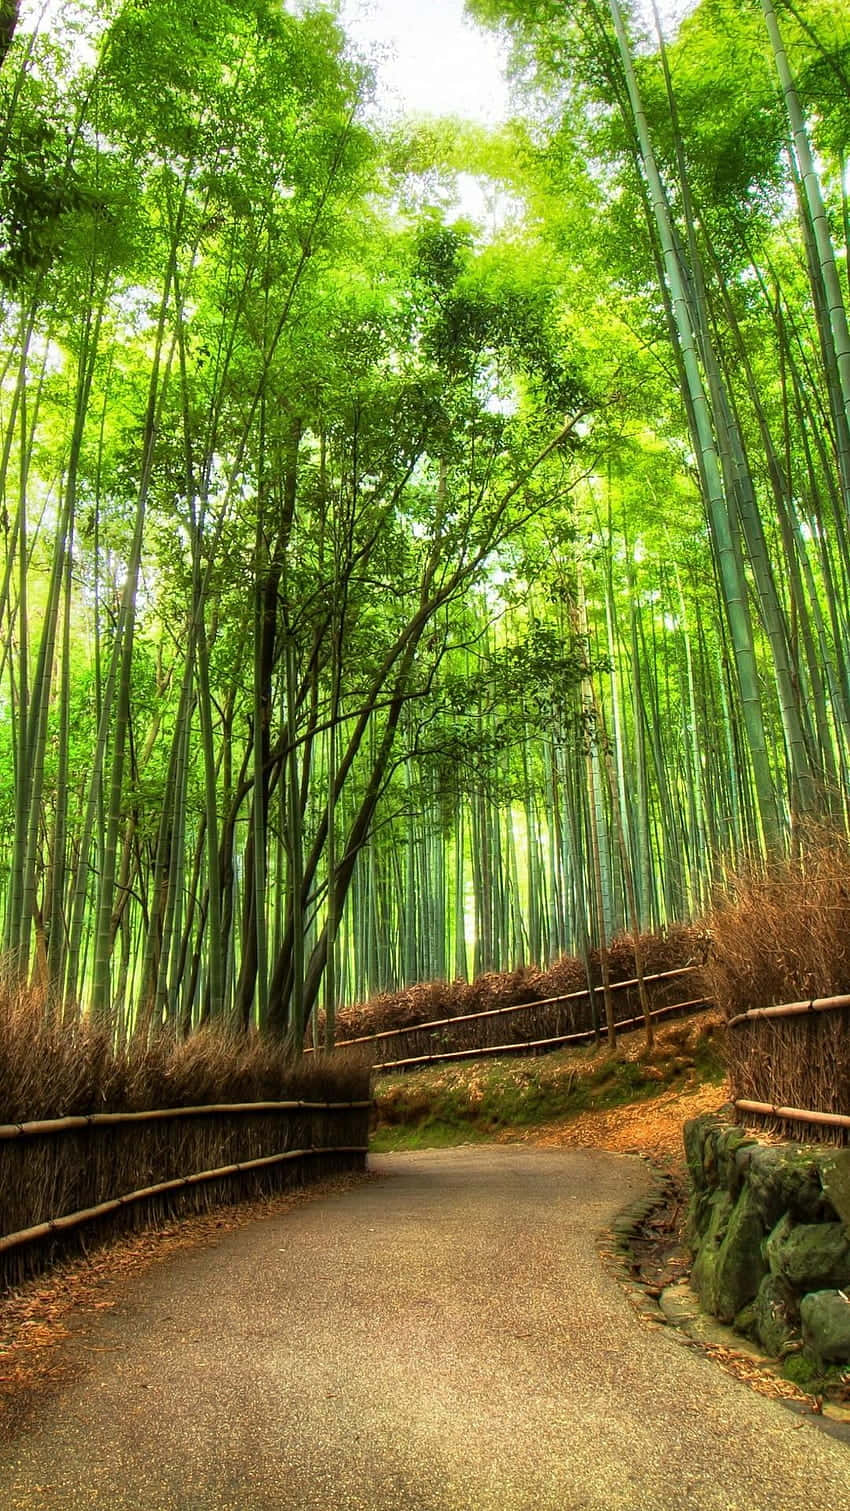 Einweg Durch Einen Bambuswald Wallpaper